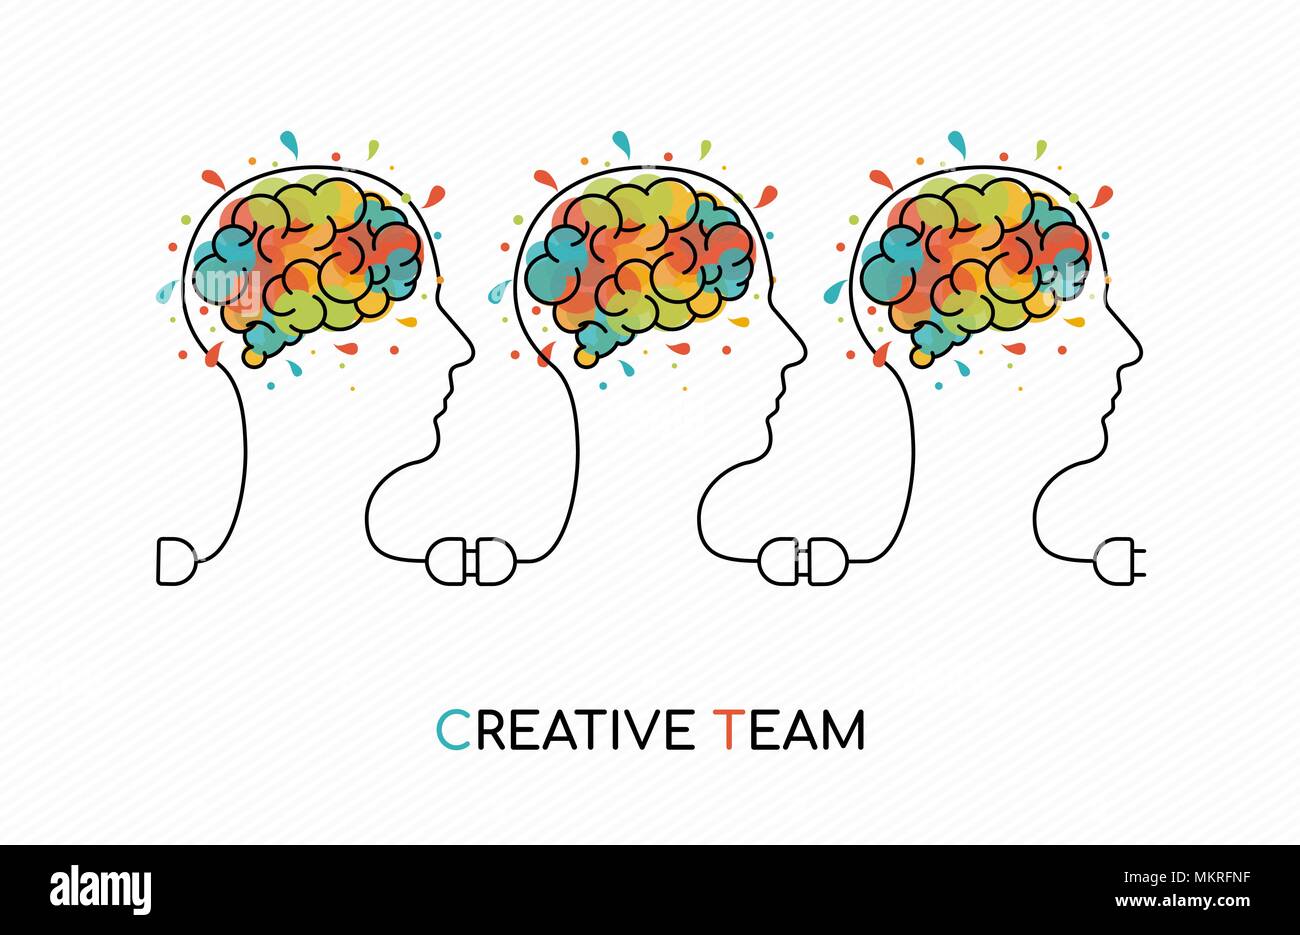 Présentation du concept d'équipe créative illustration style avec des gens comme fil d'alimentation et de l'équipe d'art colorés splash cerveau humain. Vecteur EPS10. Illustration de Vecteur